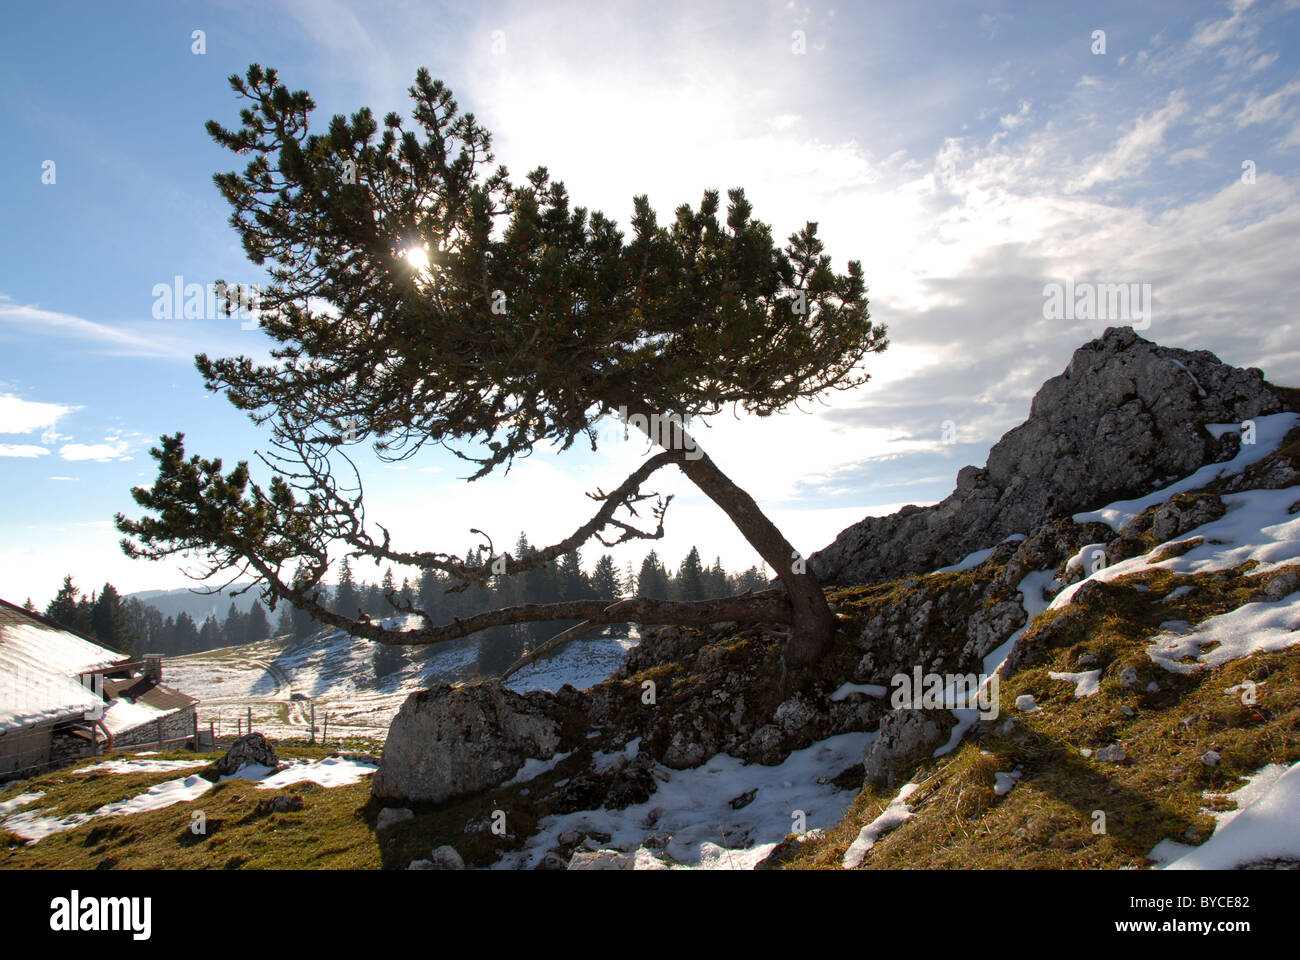 Crooked Pine Tree sur crête de montagne Jura gamme à Chaumont, Neuchâtel, Suisse Banque D'Images